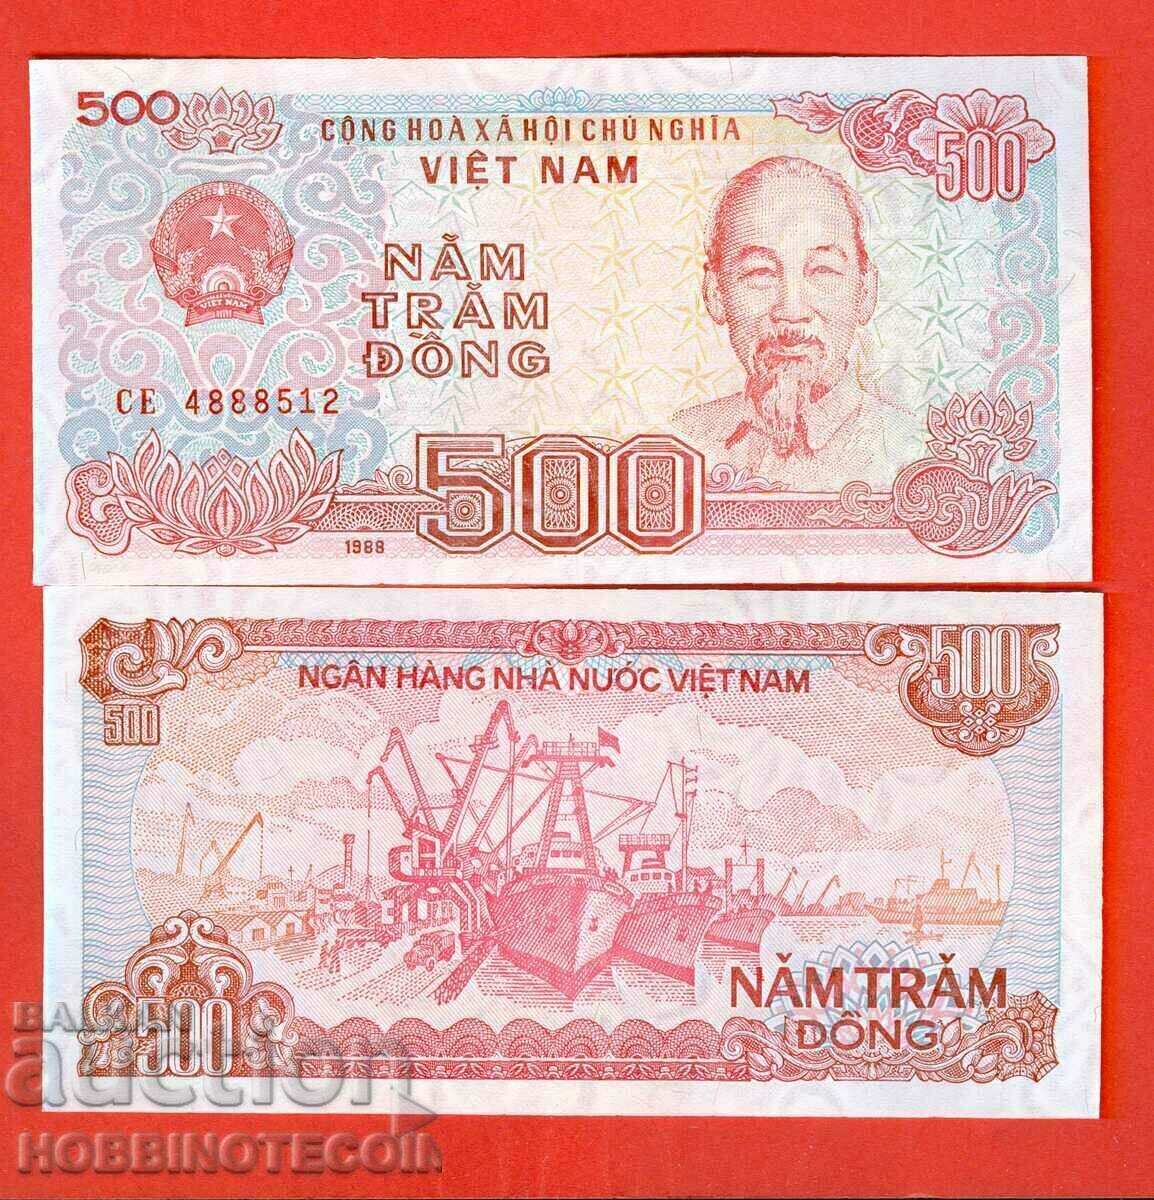 VIETNAM VIET NAM 500 Dong issue - issue 1988 NEW UNC